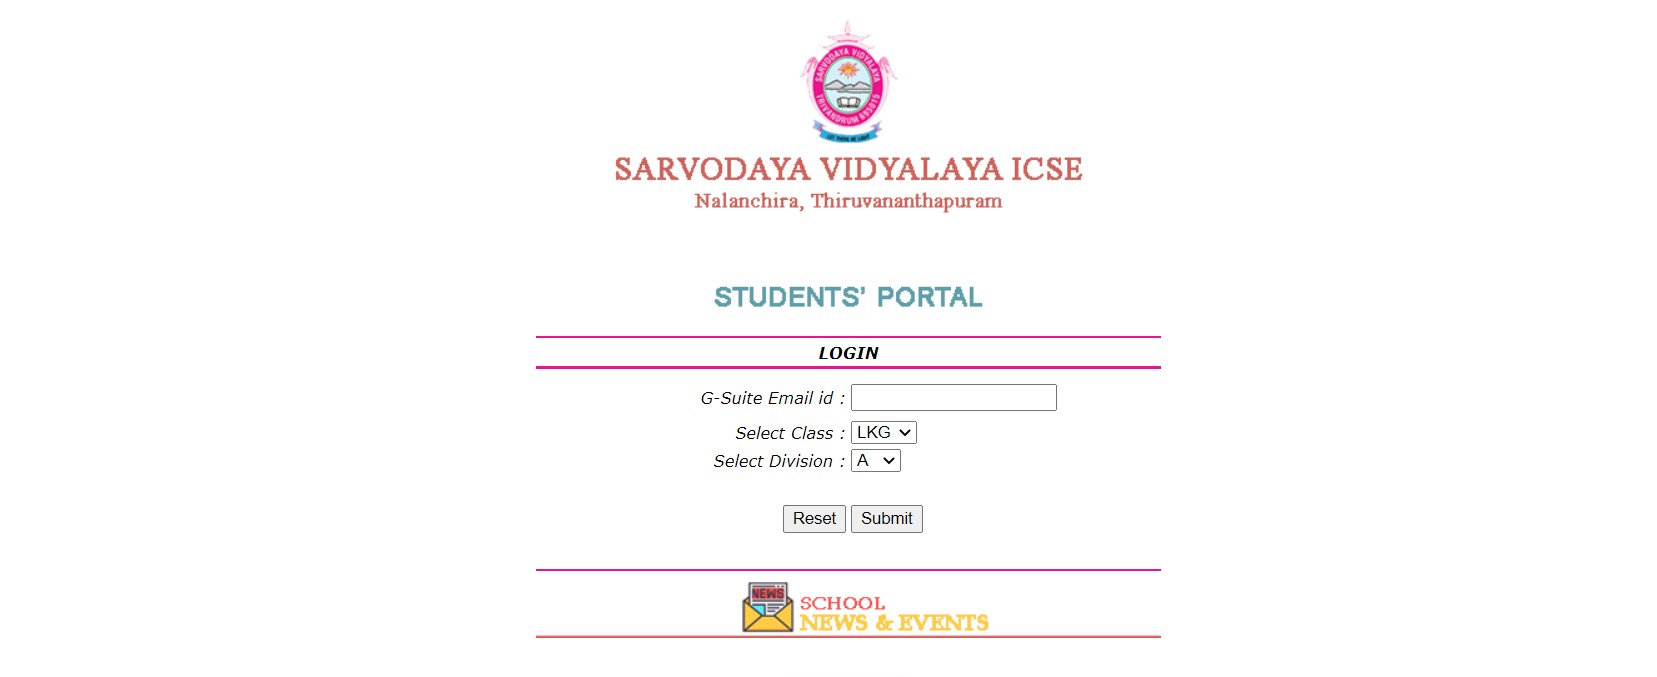 Sarvodaya Student portal sign in